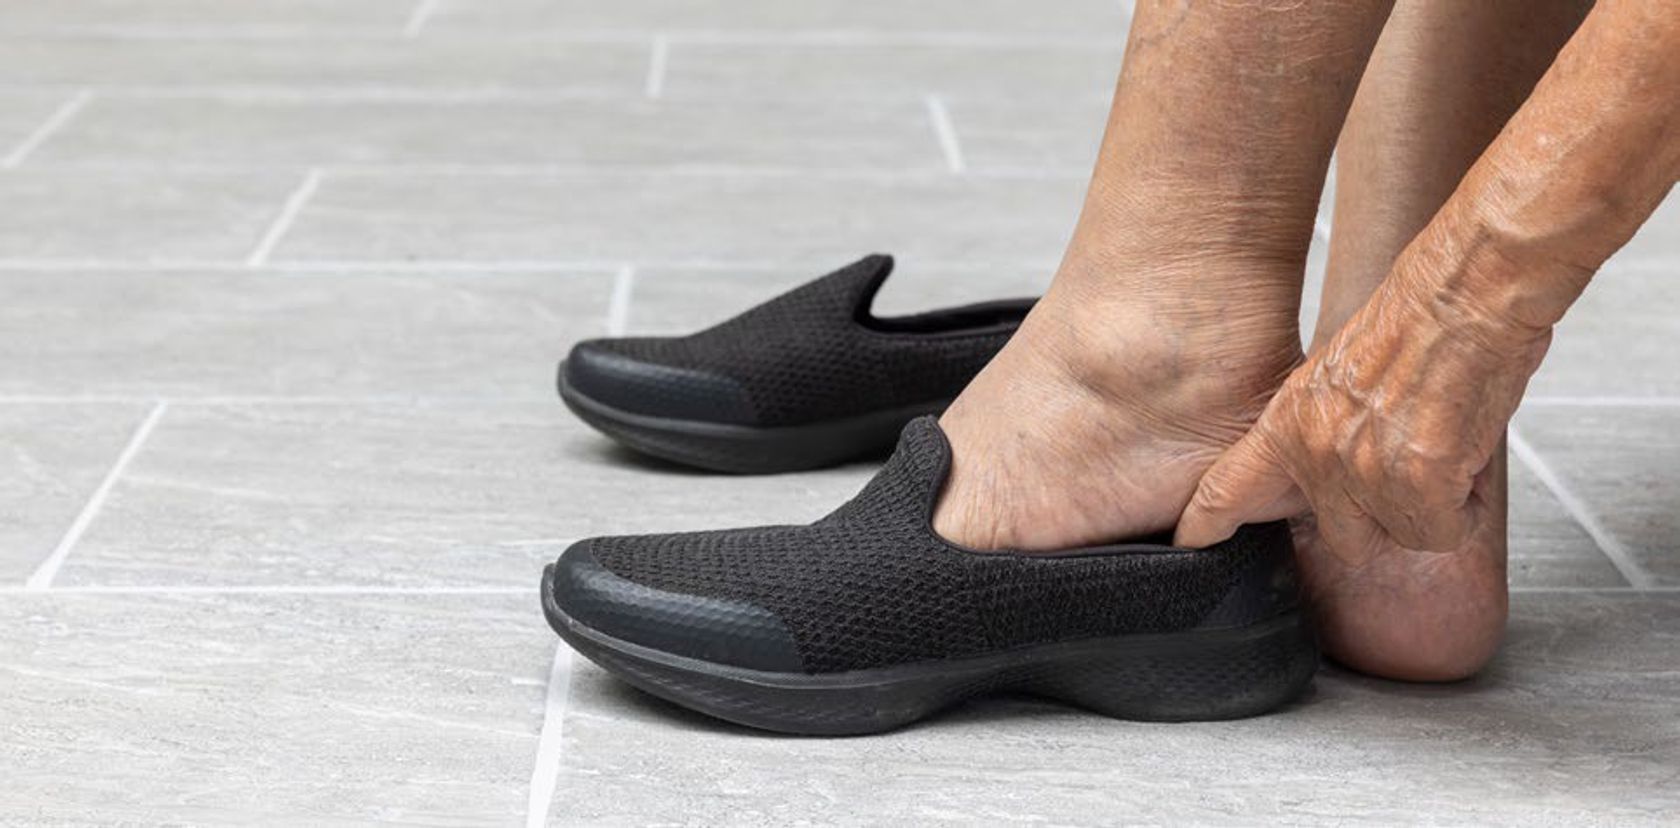 Man sieht die nackten Füße einer älteren Person, die sich mit Mühe Schuhe anzieht.